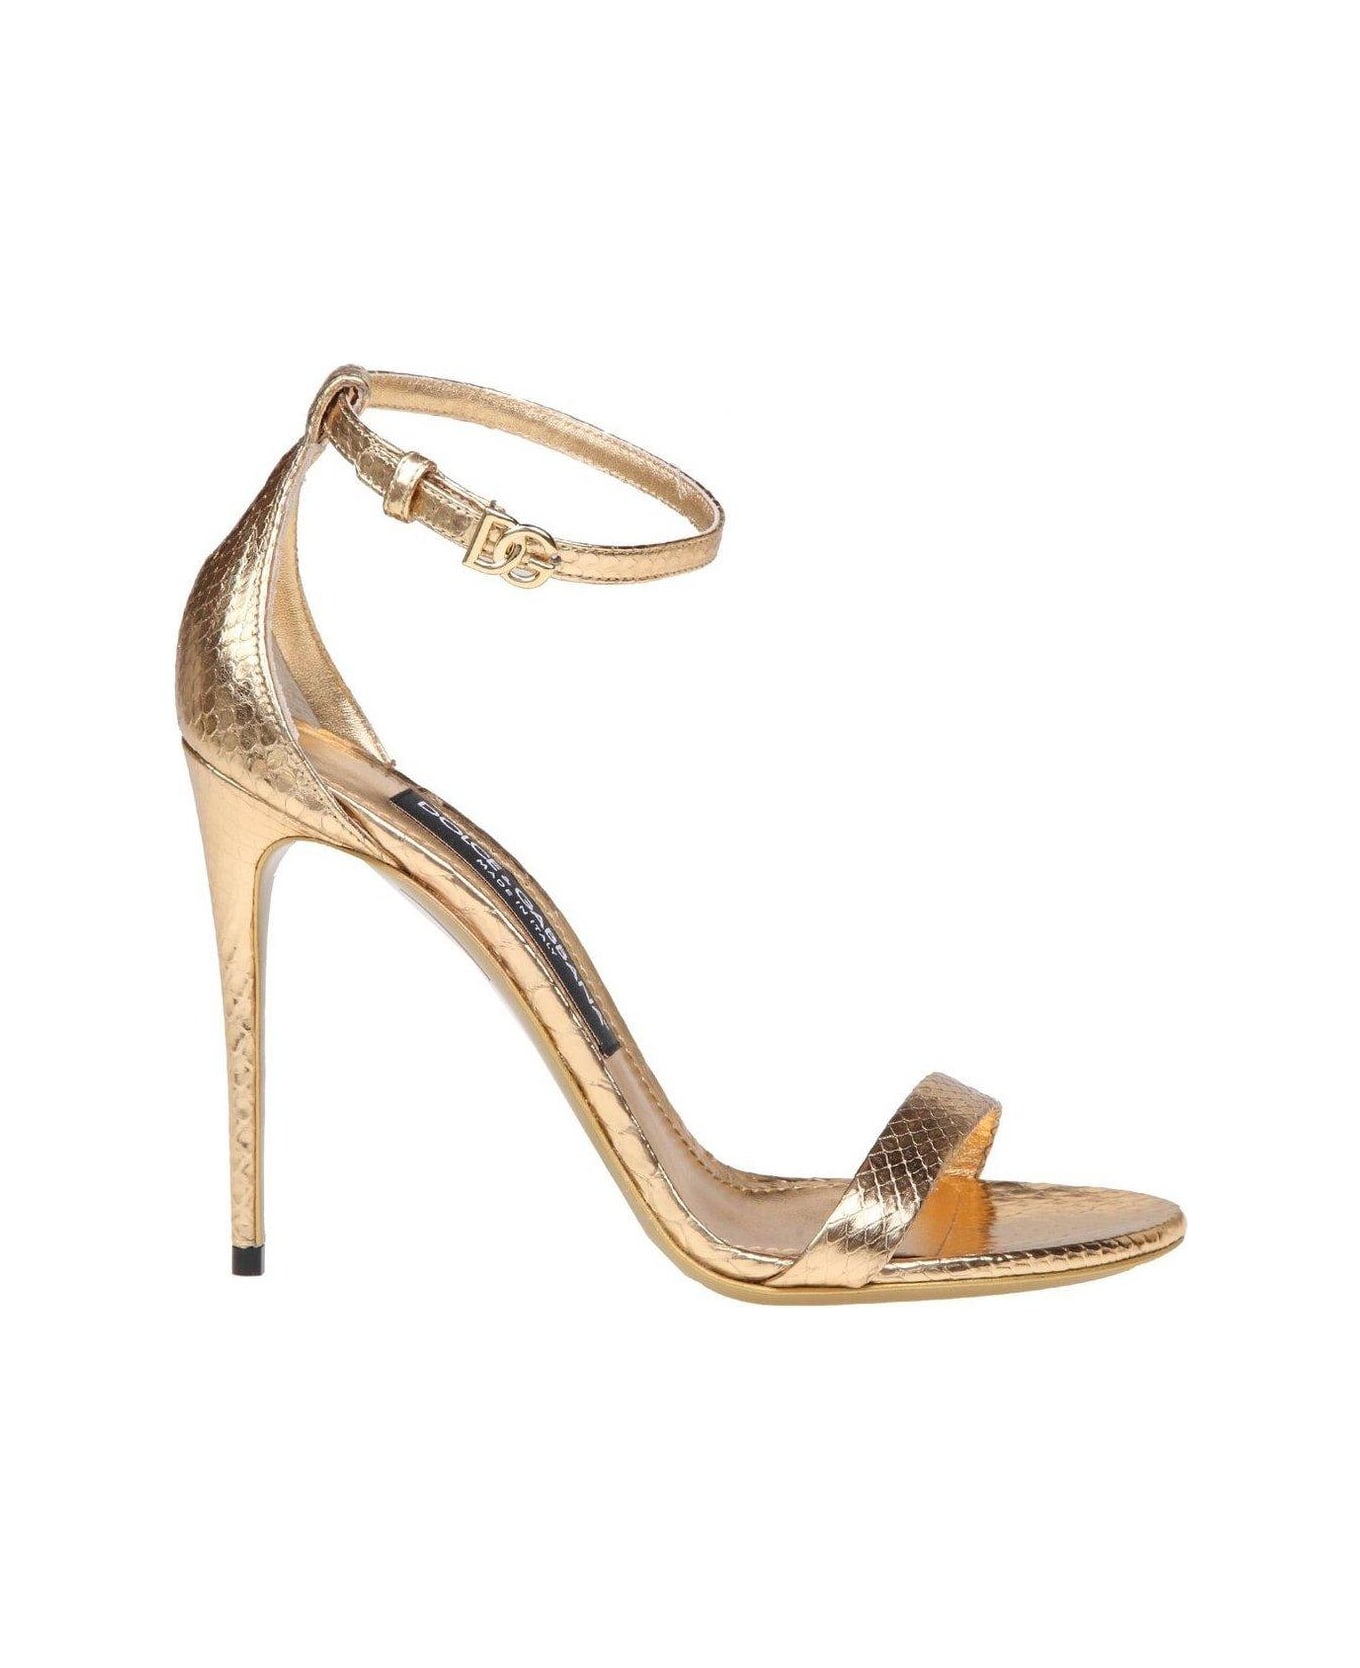 Dolce & Gabbana Keira High Stiletto Heel Sandals - Gold